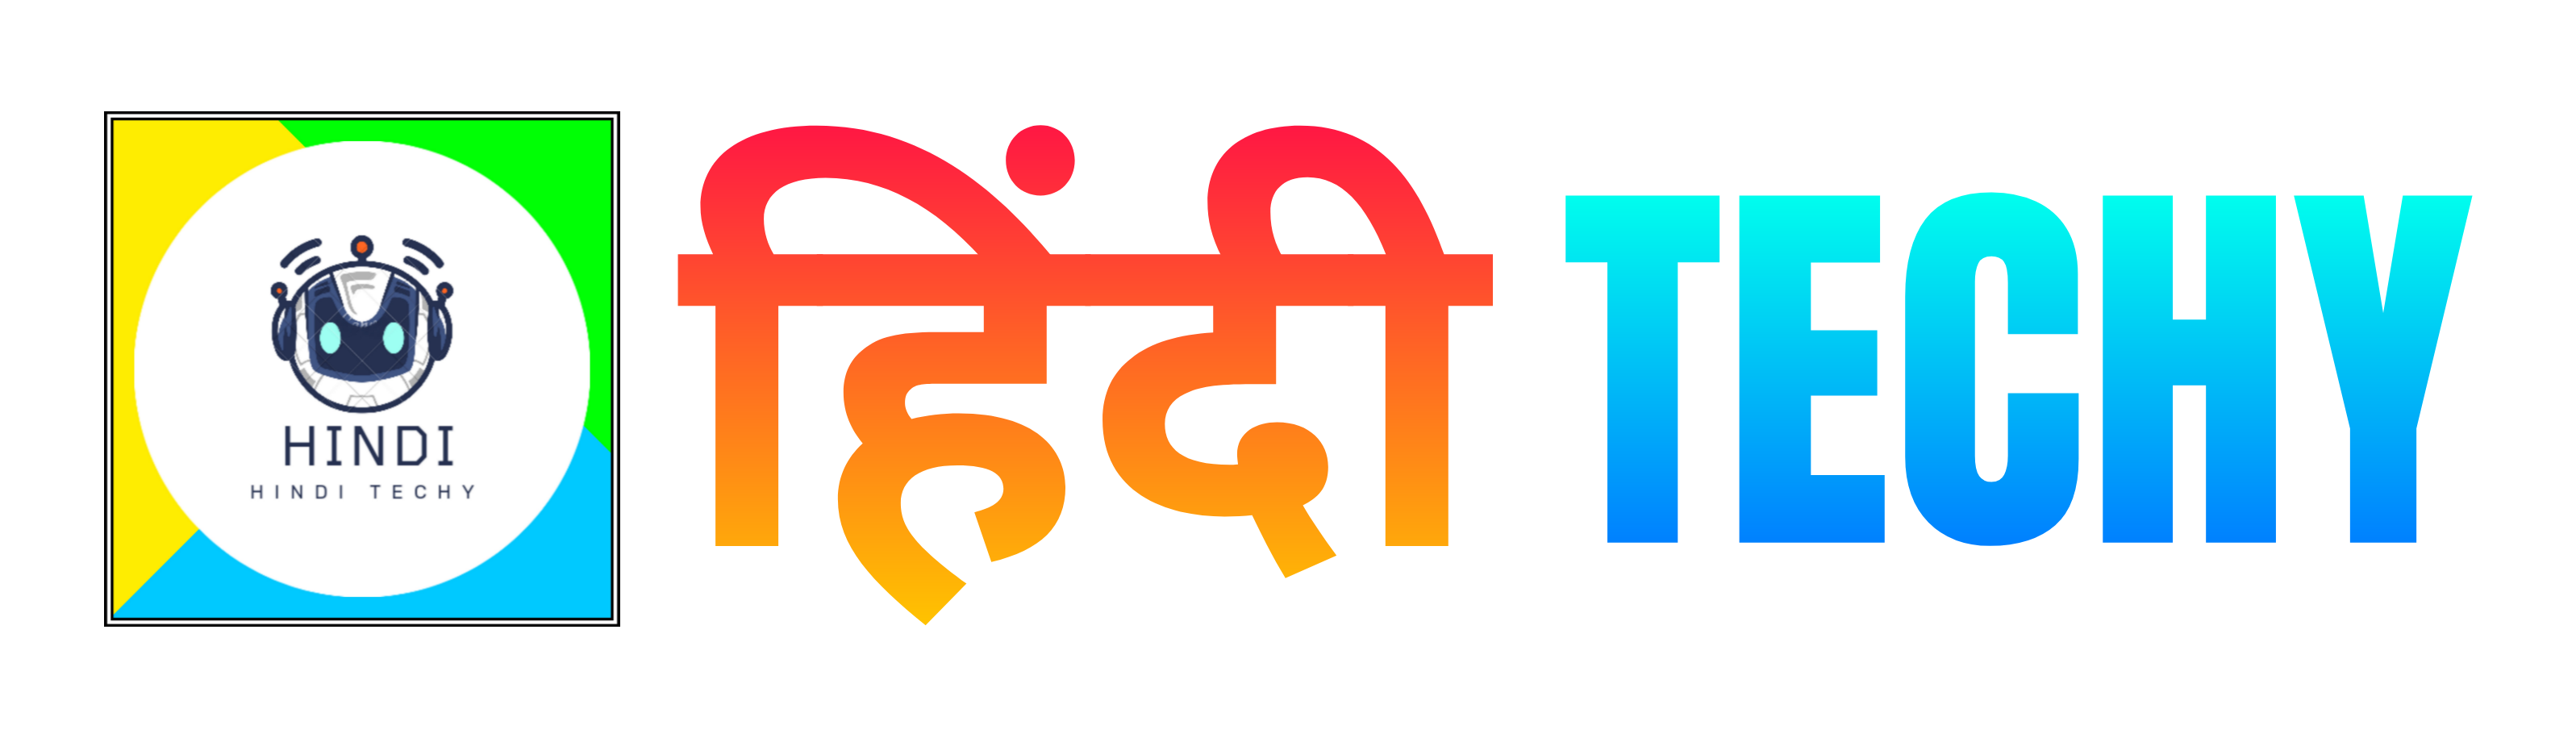 Hindi Techy